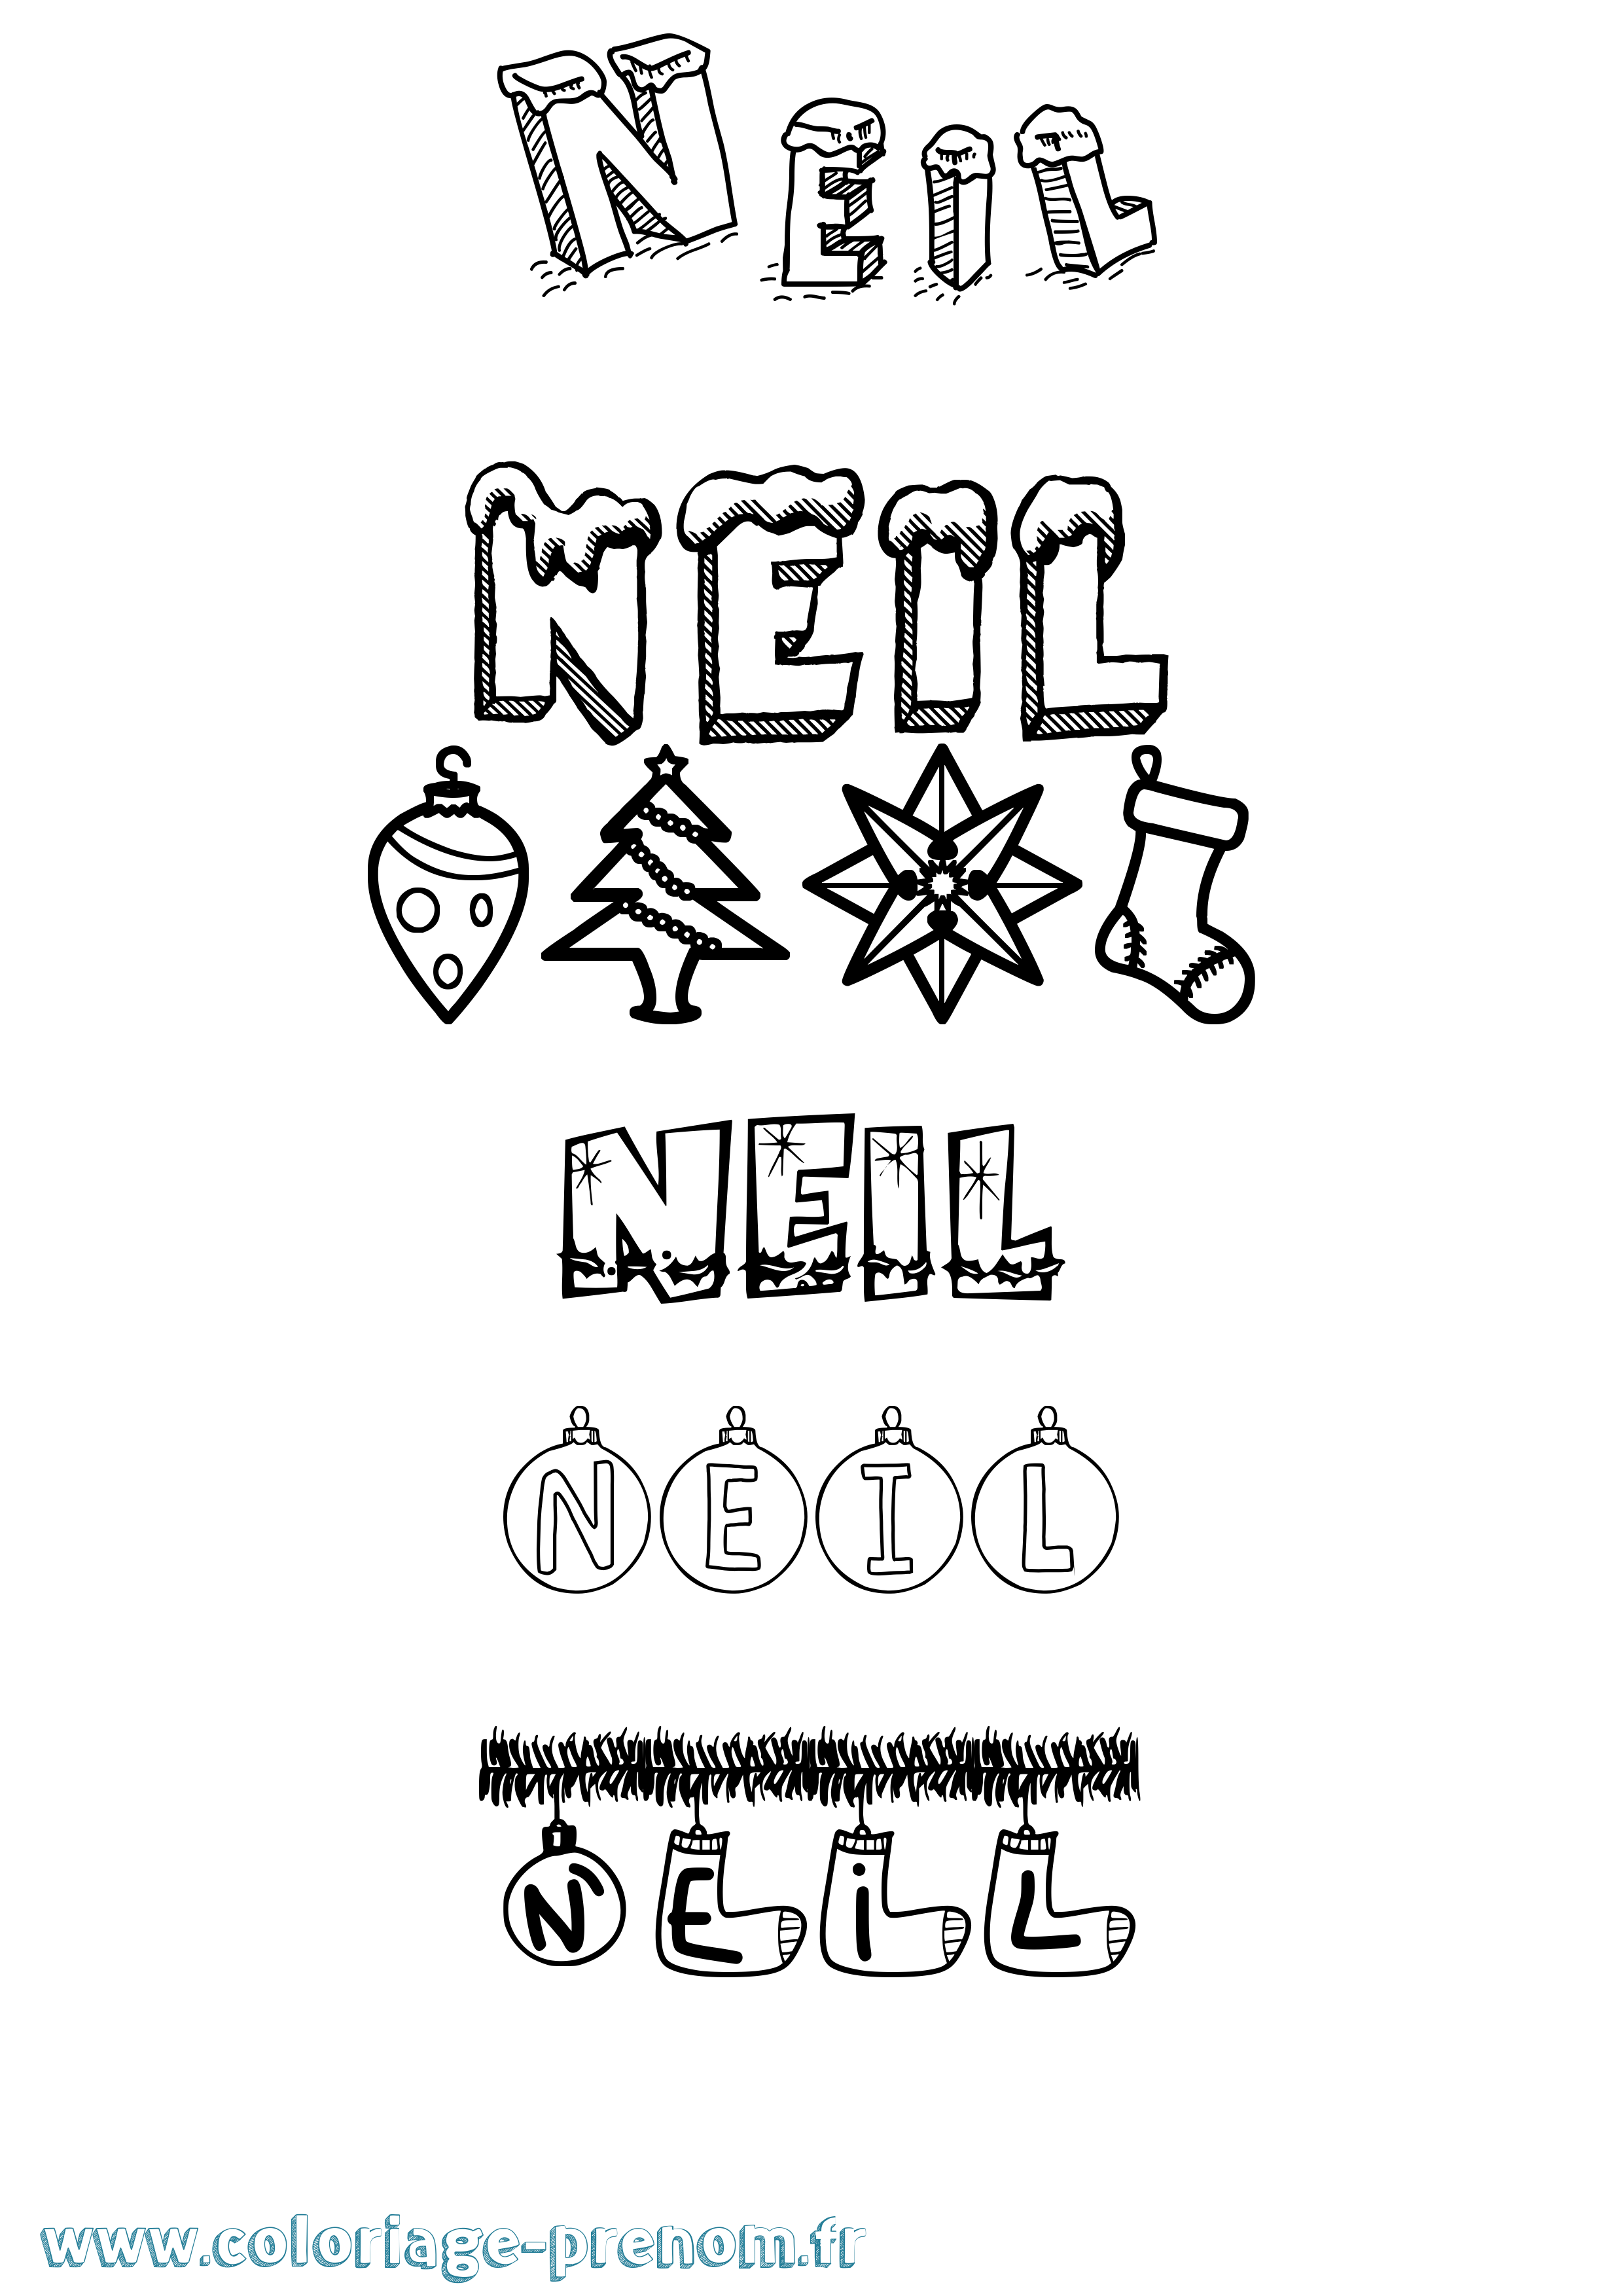 Coloriage prénom Neil